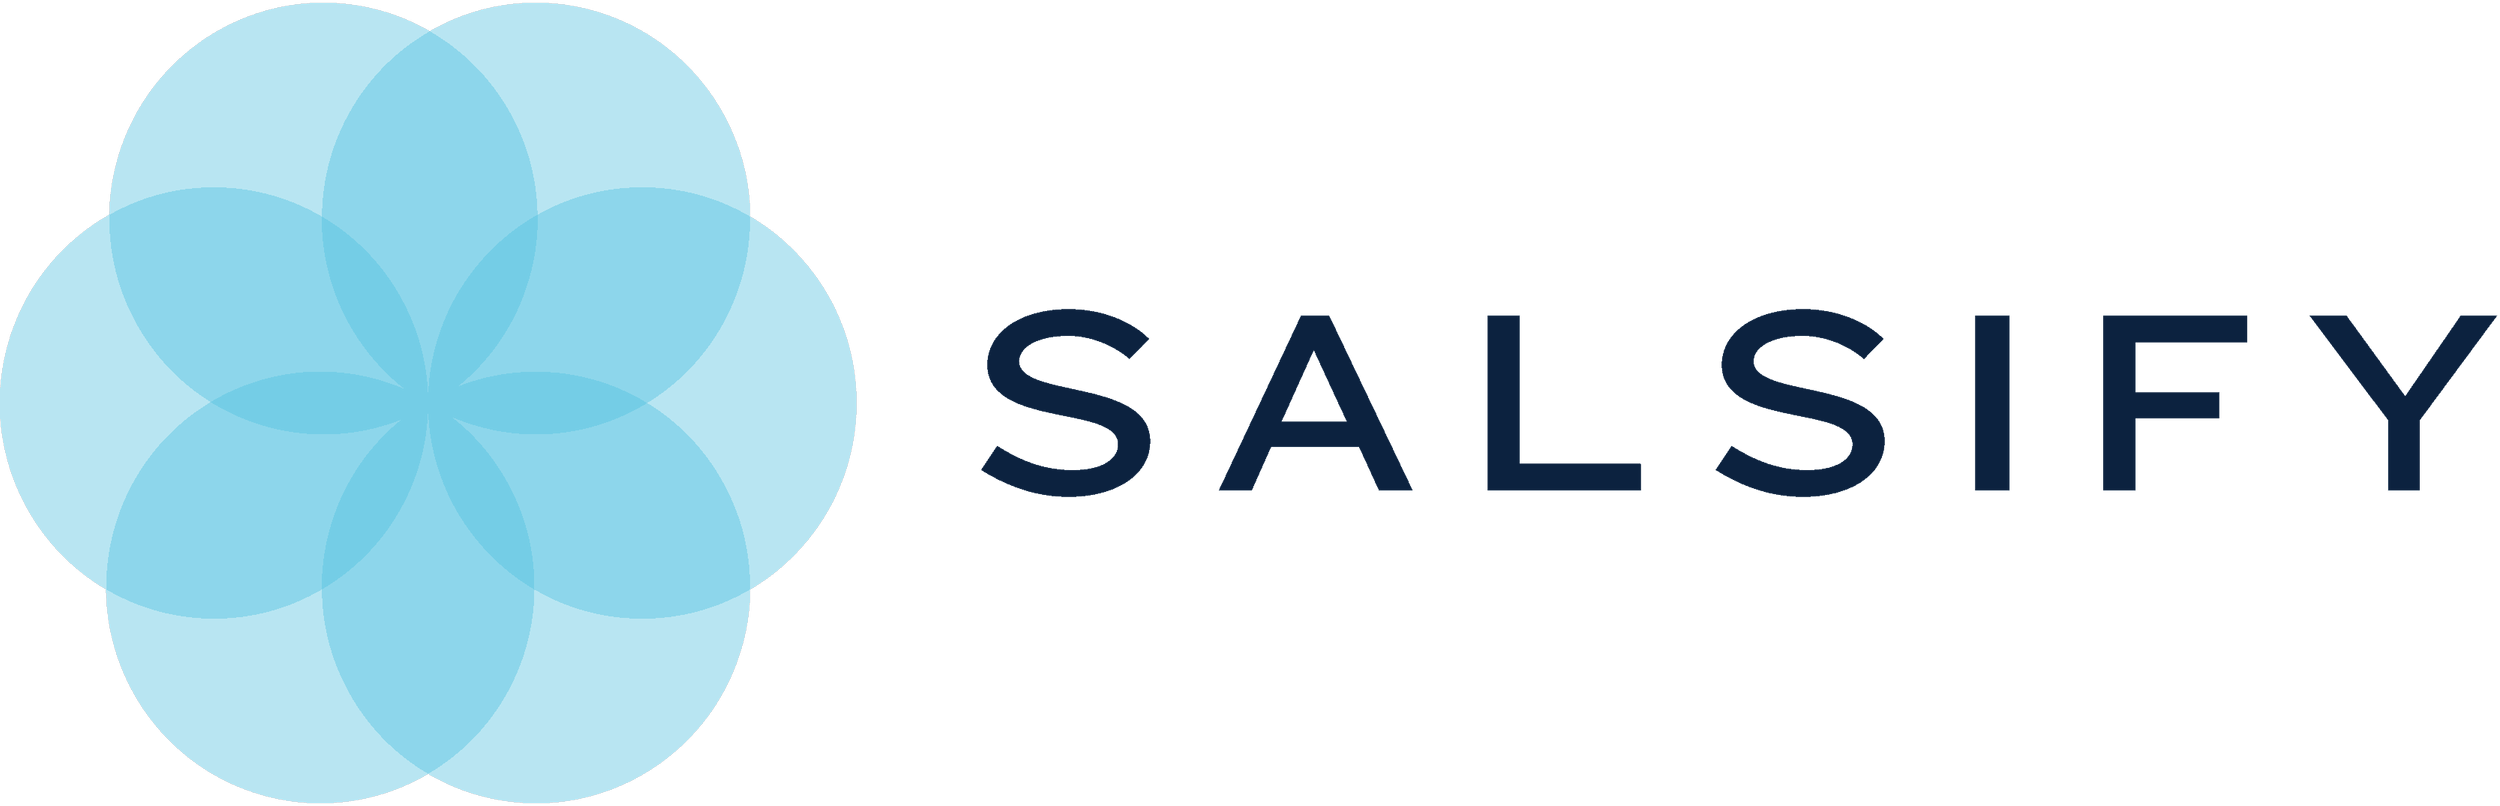 salsify-logo.png